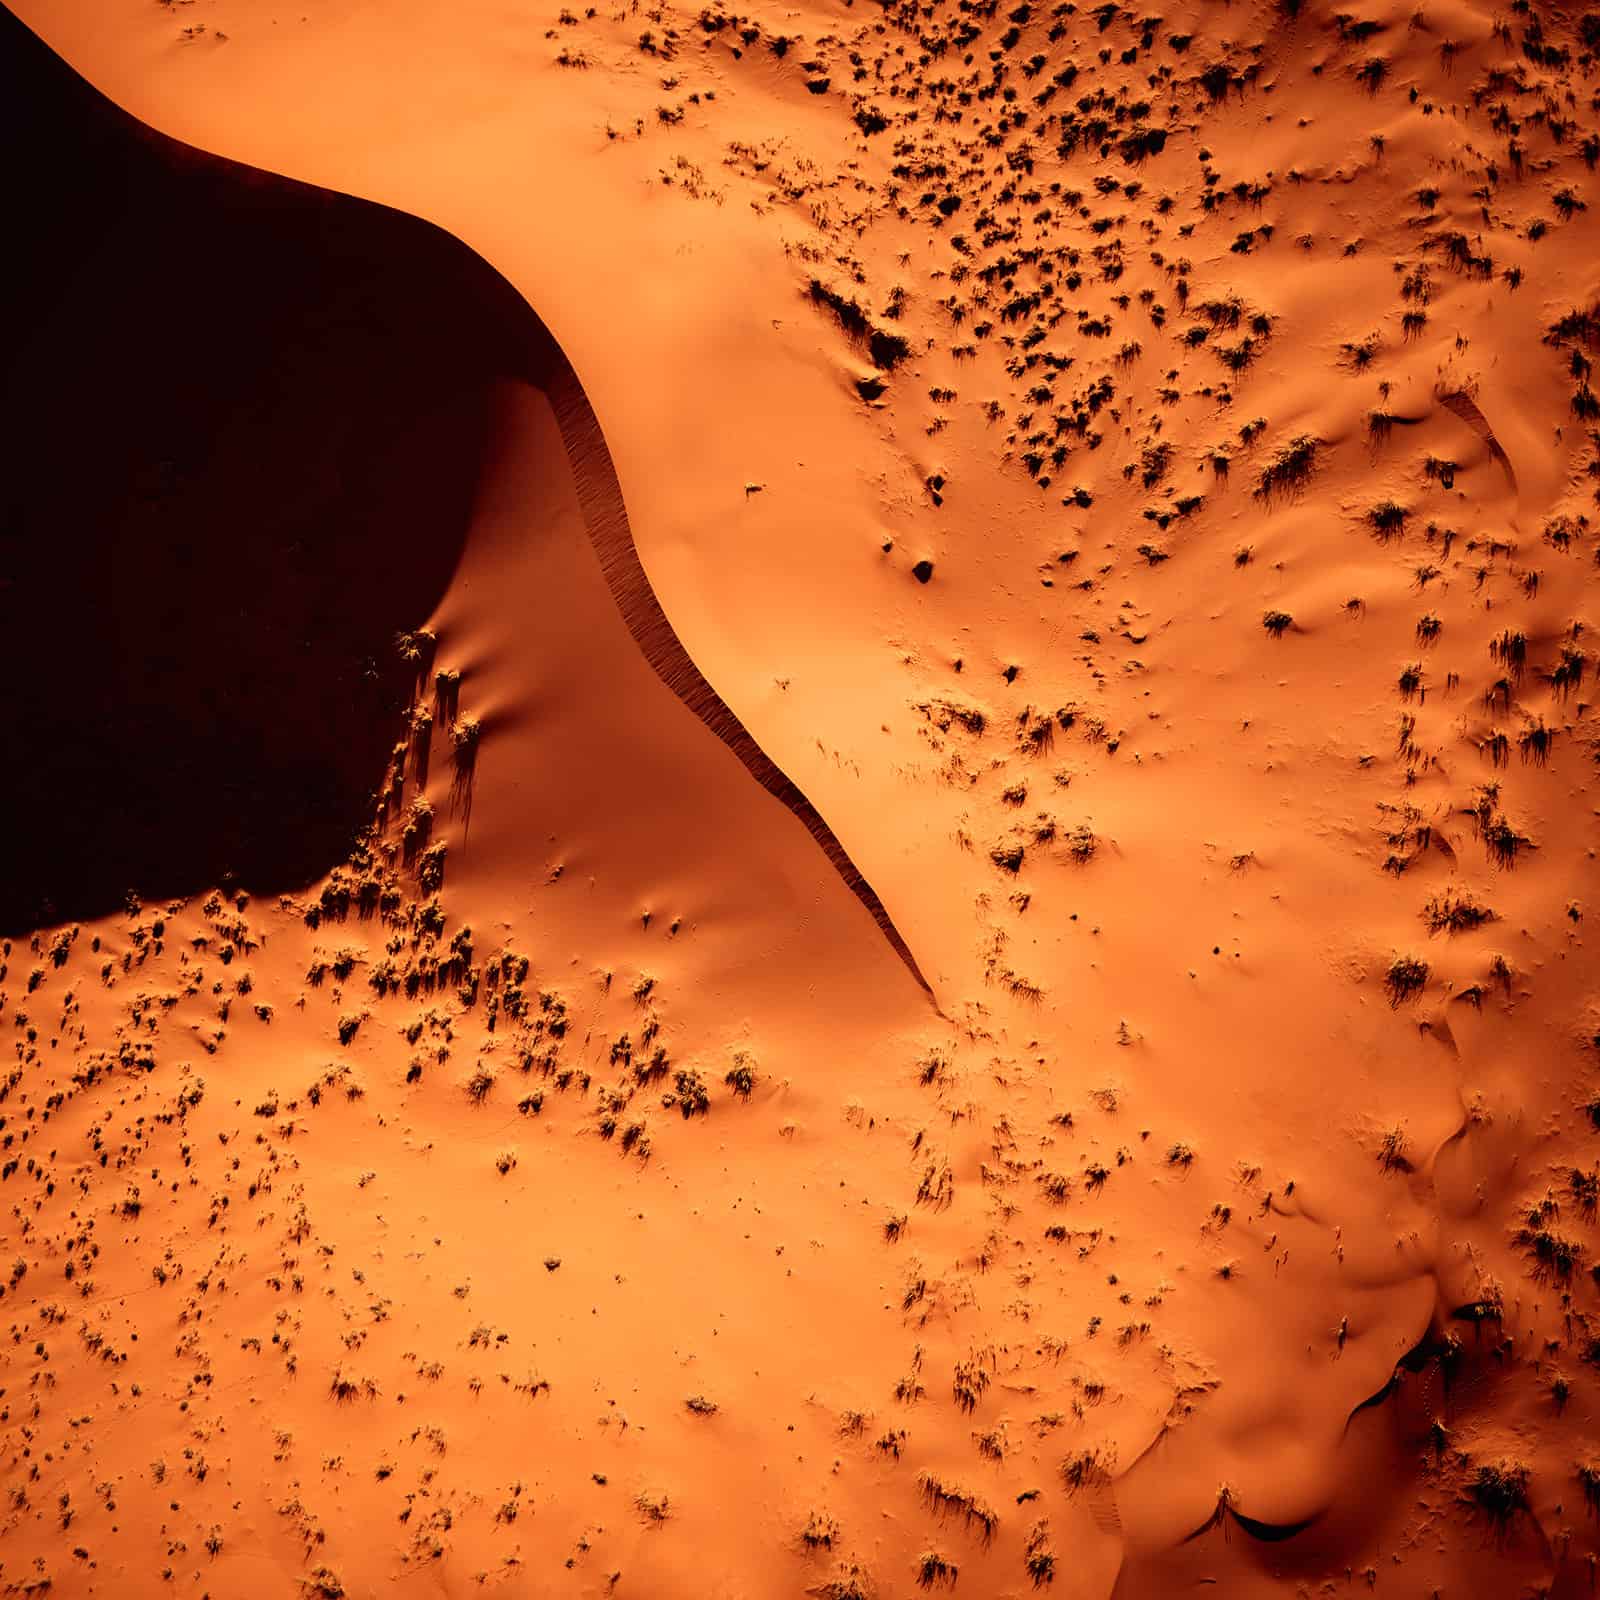 "Color of the Desert" Luftbild der Wüste Namibias - Farbspiel in den schönsten Orangtönen